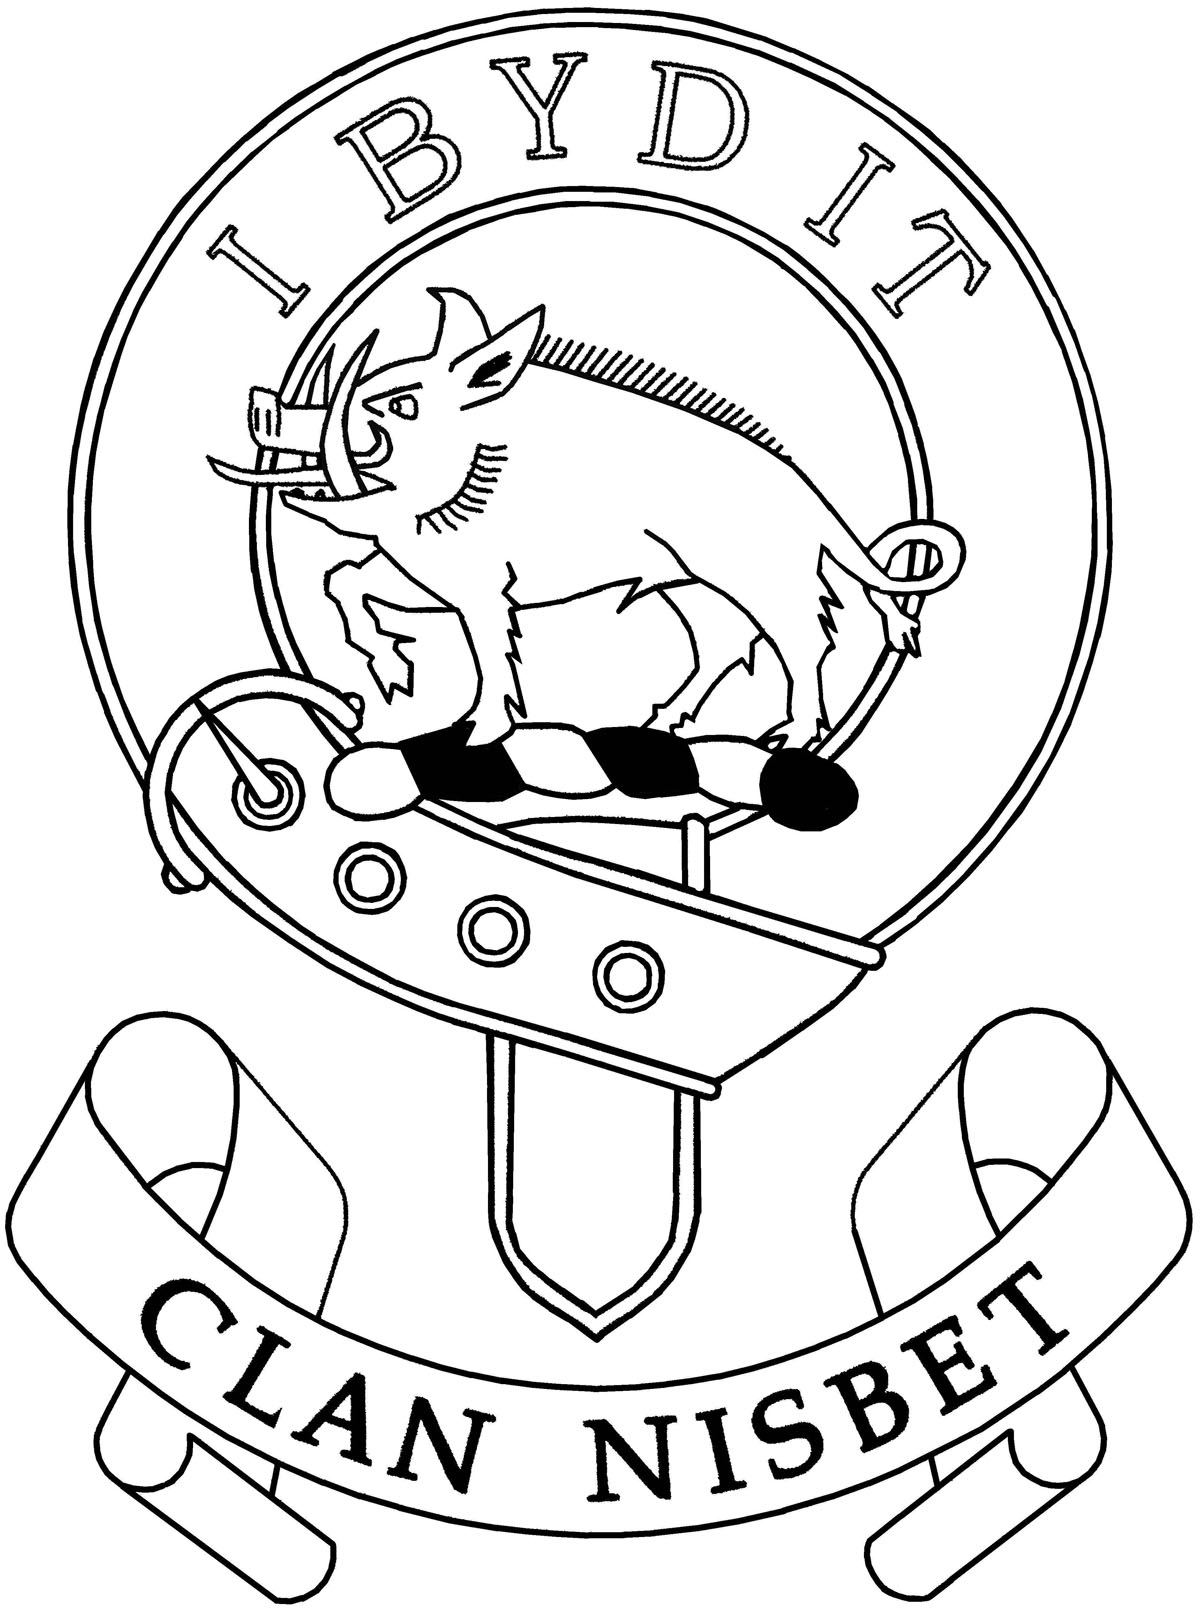 Nesbitt/Nisbet Society of North America | Emblems and Symbols